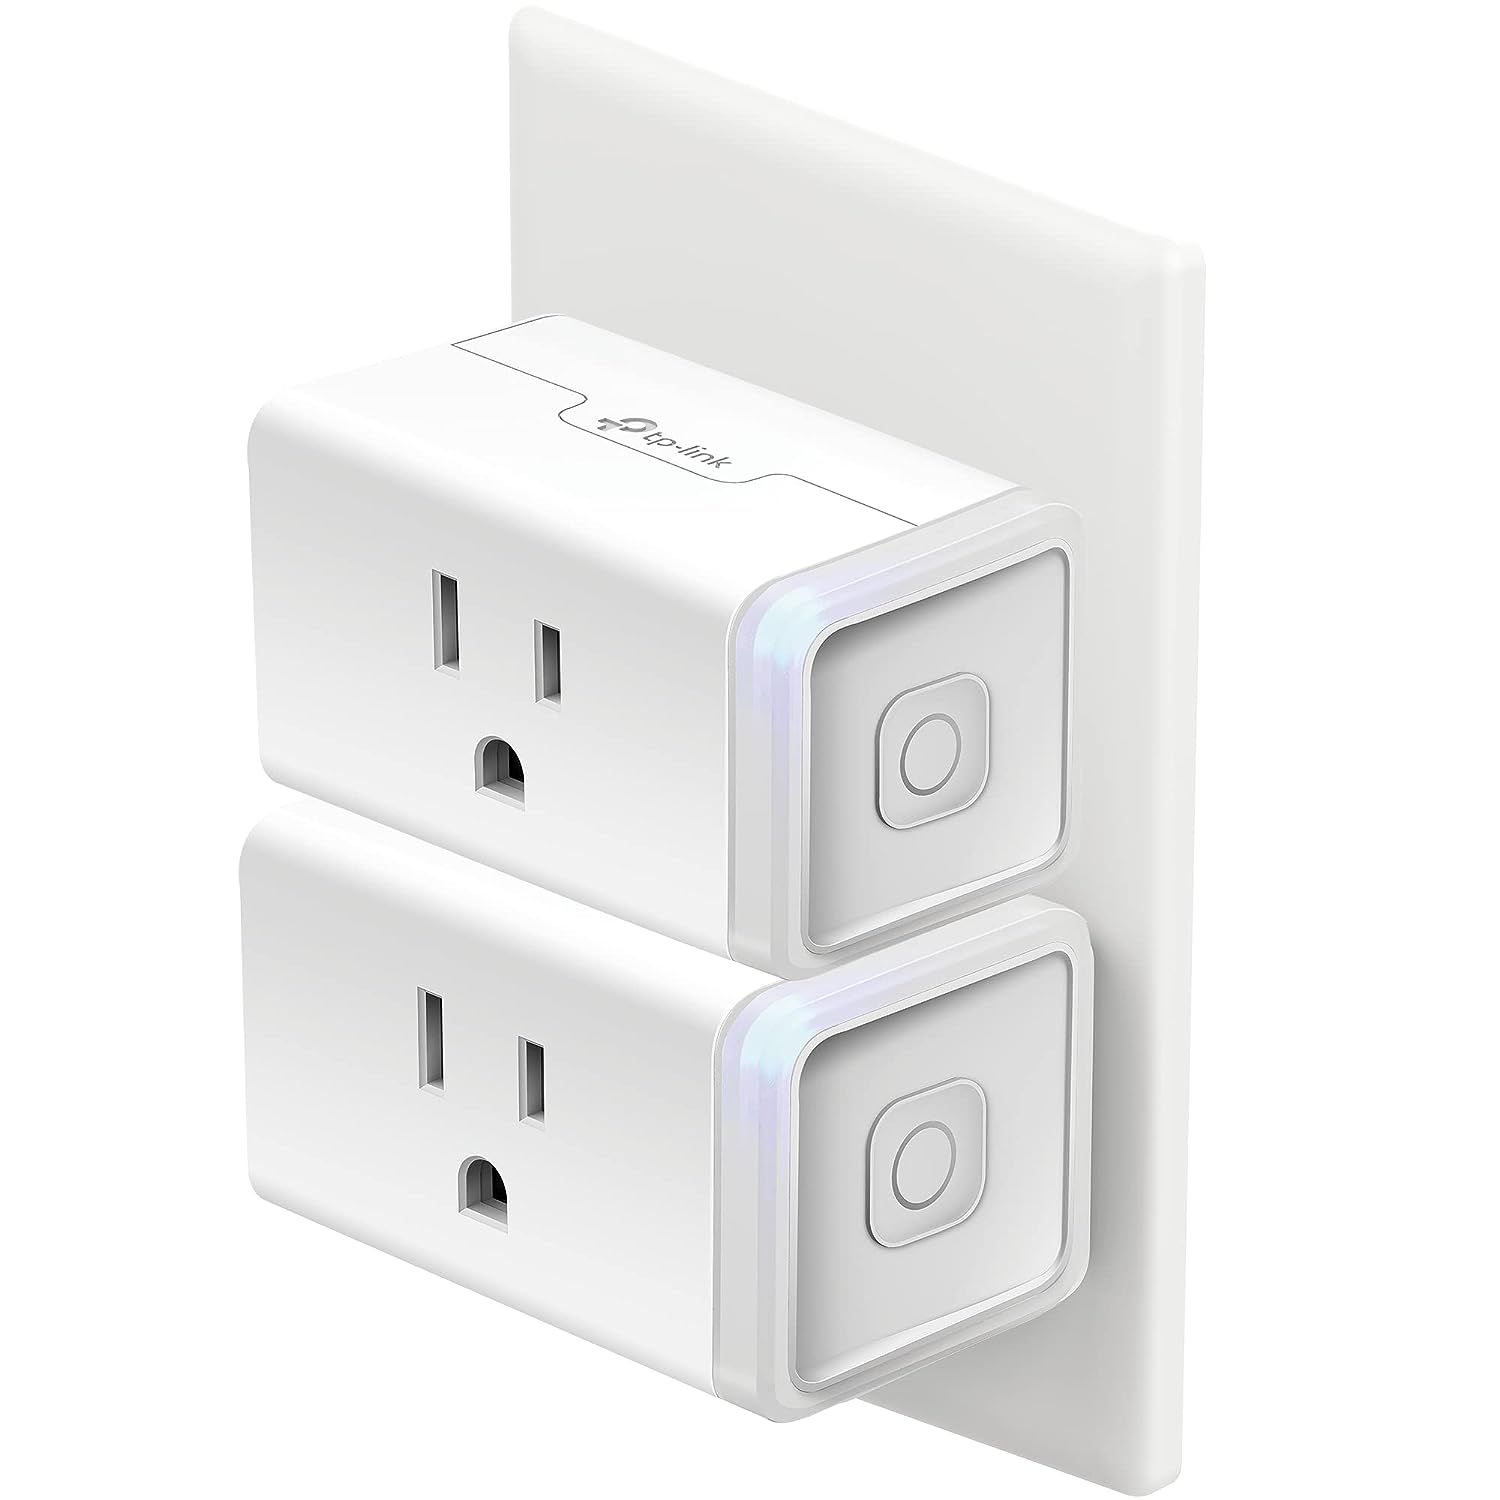 kasa-hs103p2-smart-home-wi-fi-plug-white